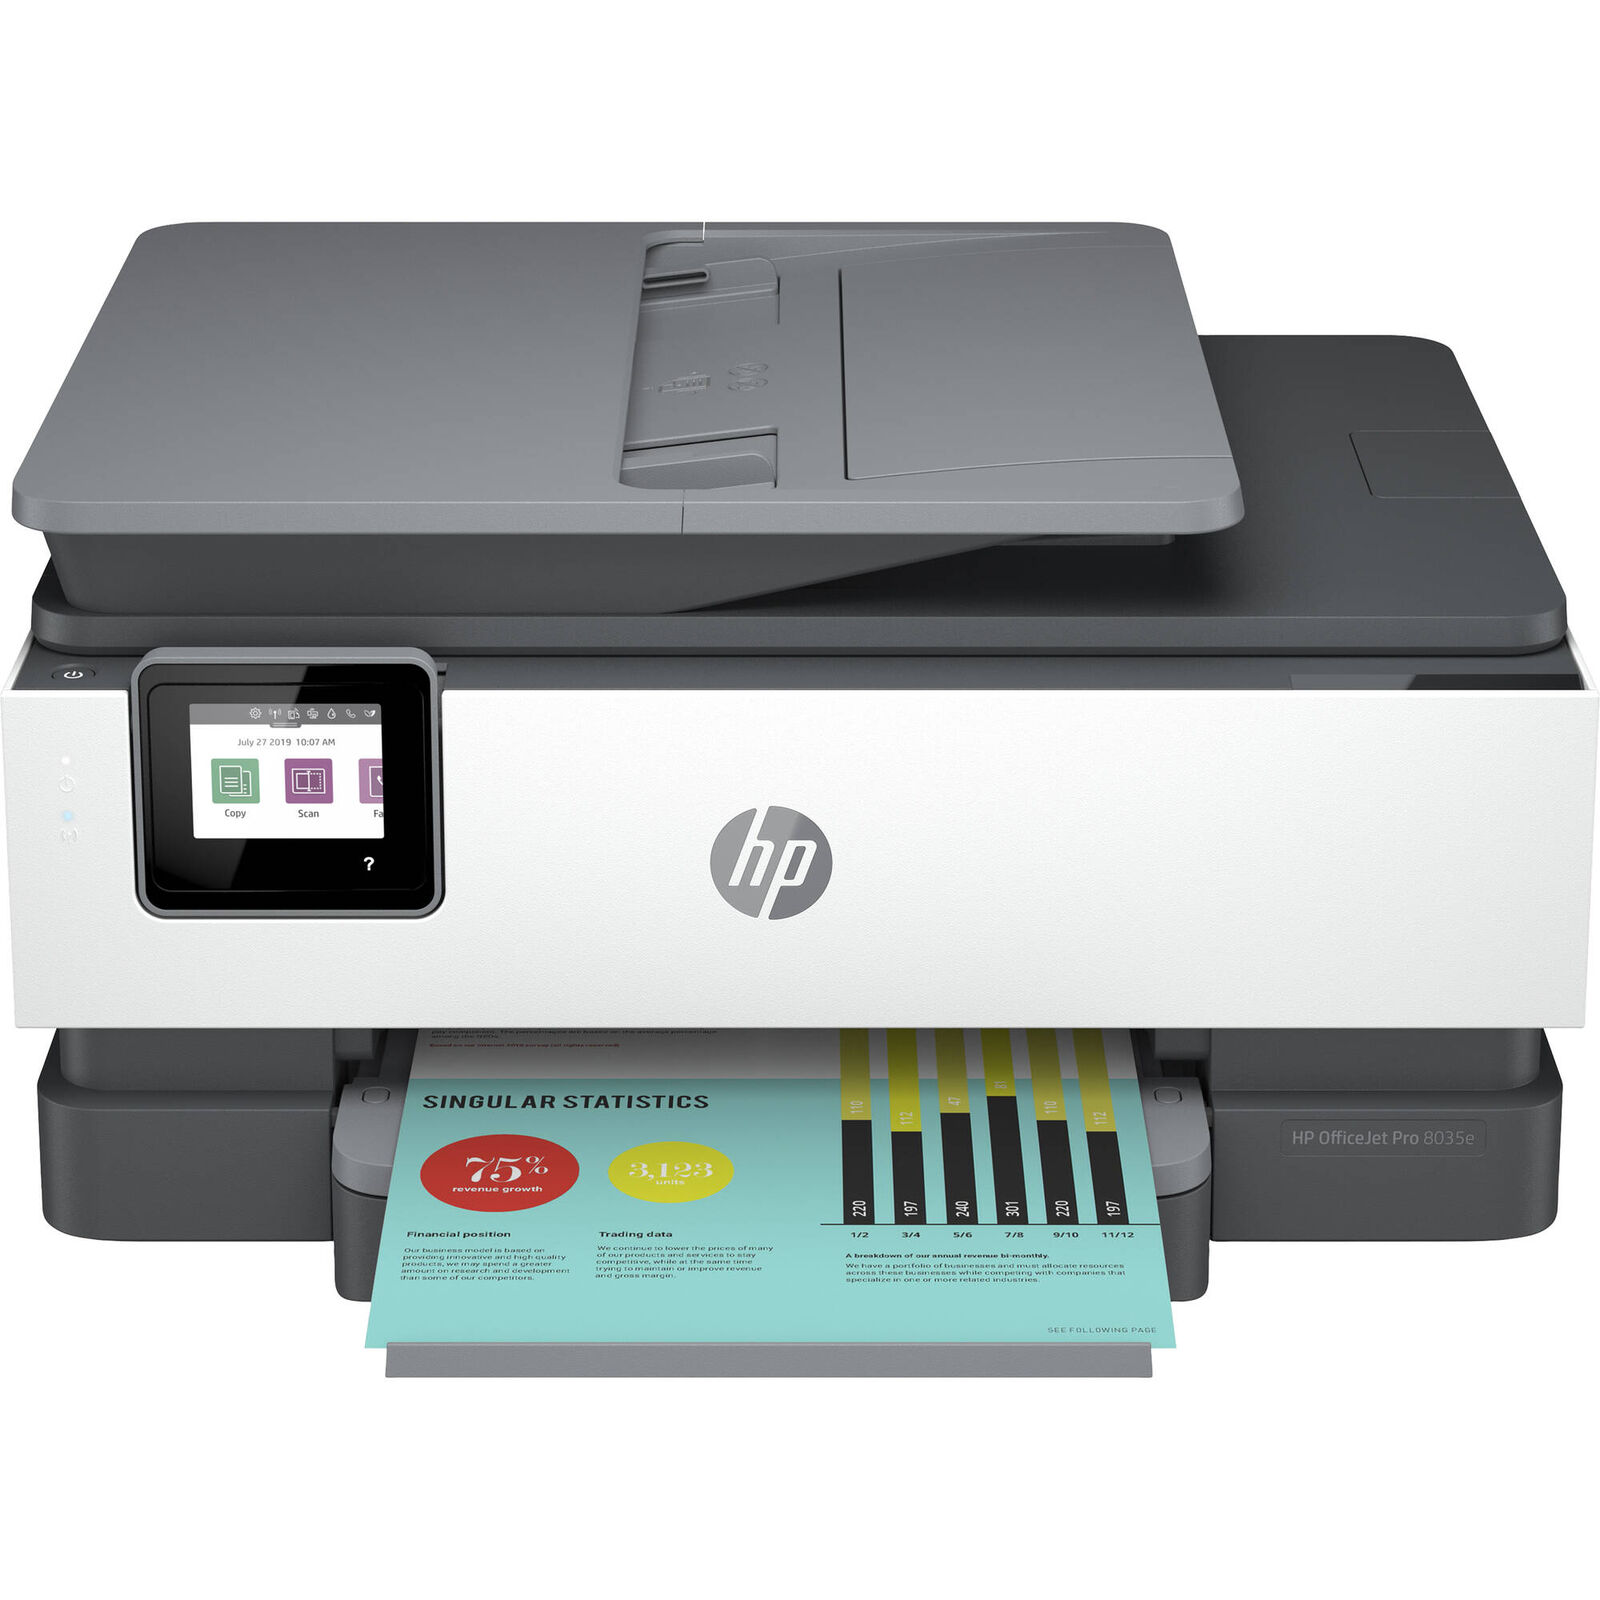 HP HP-OJPRO8035E-B-RB OfficeJet Pro 8035 All-in-One Printer Basalt